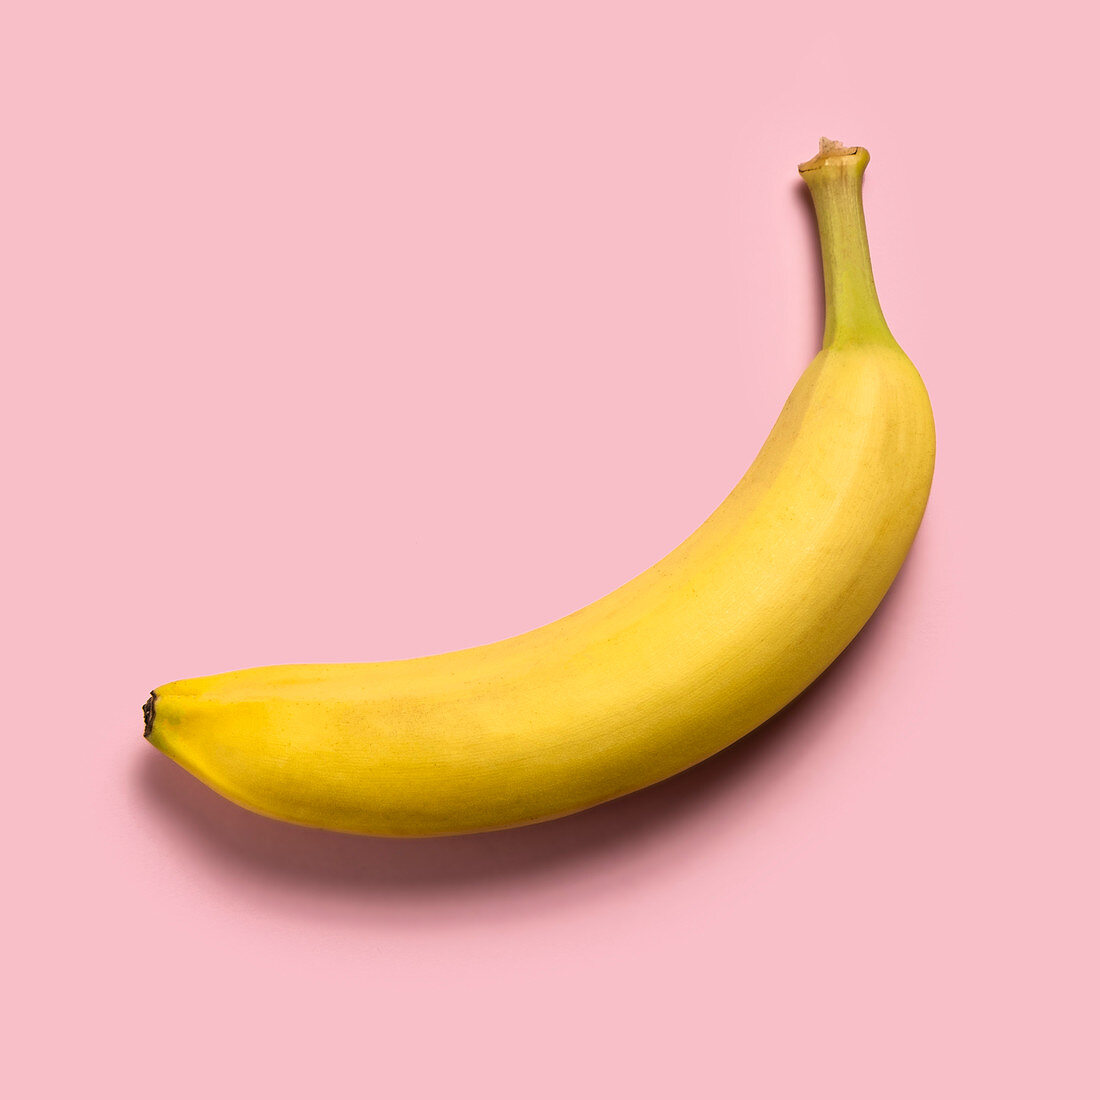 Reife Banane auf rosa Hintergrund